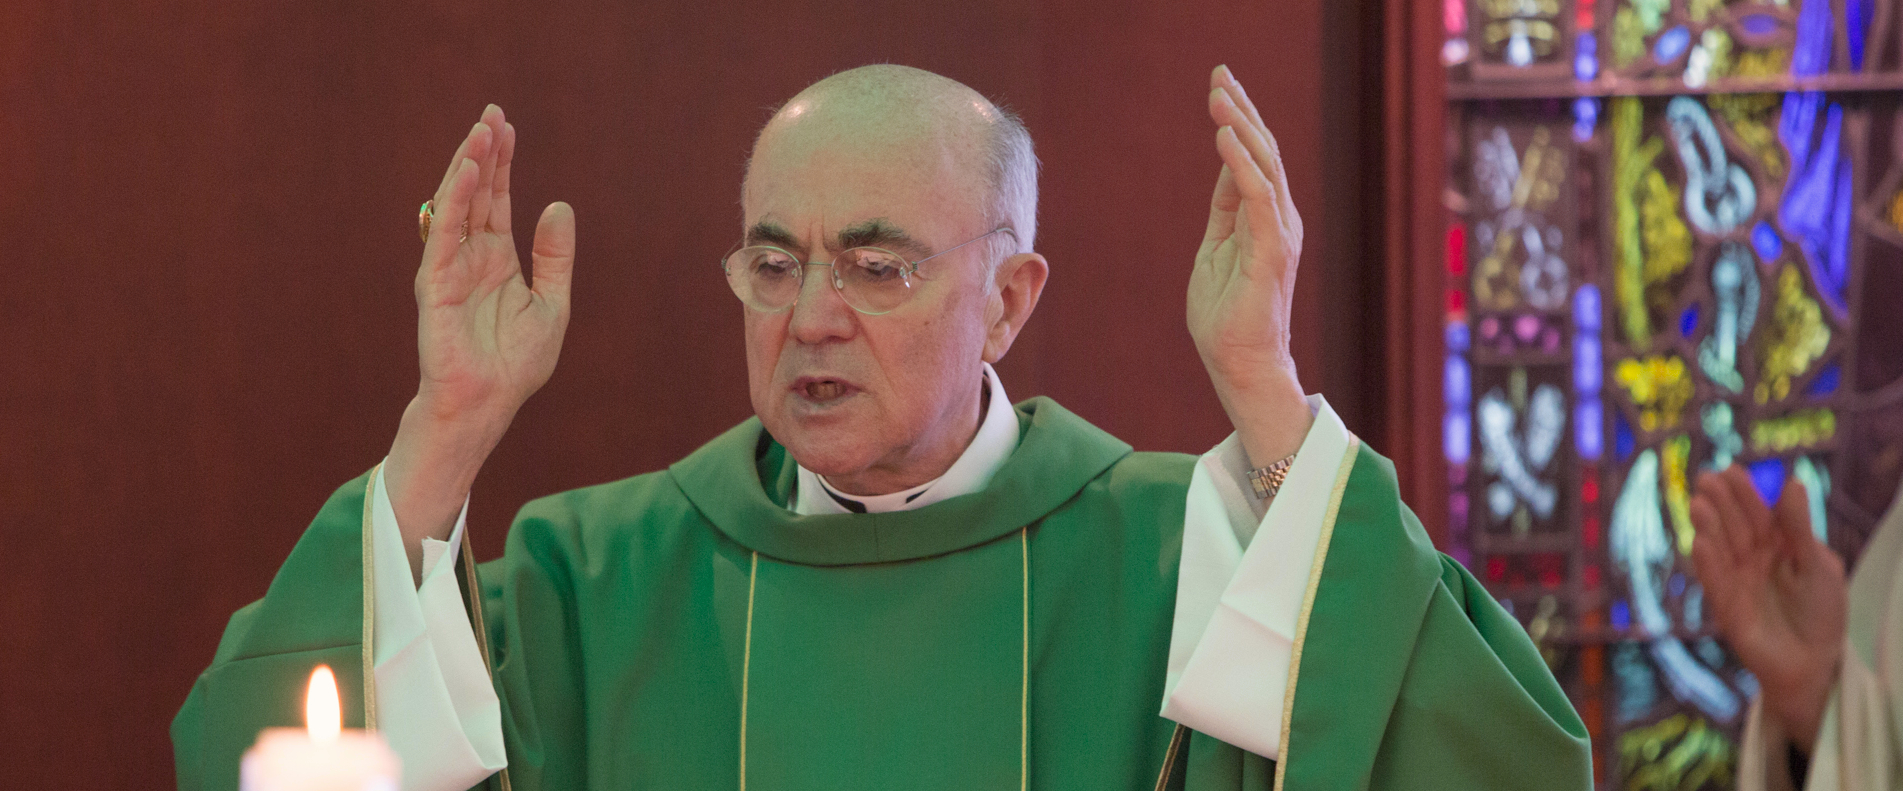 Carlo Maria Vigano ne reconnaît pas l'autorité du pape | © Archdiocese of Boston/Flickr/CC BY-ND 2.0